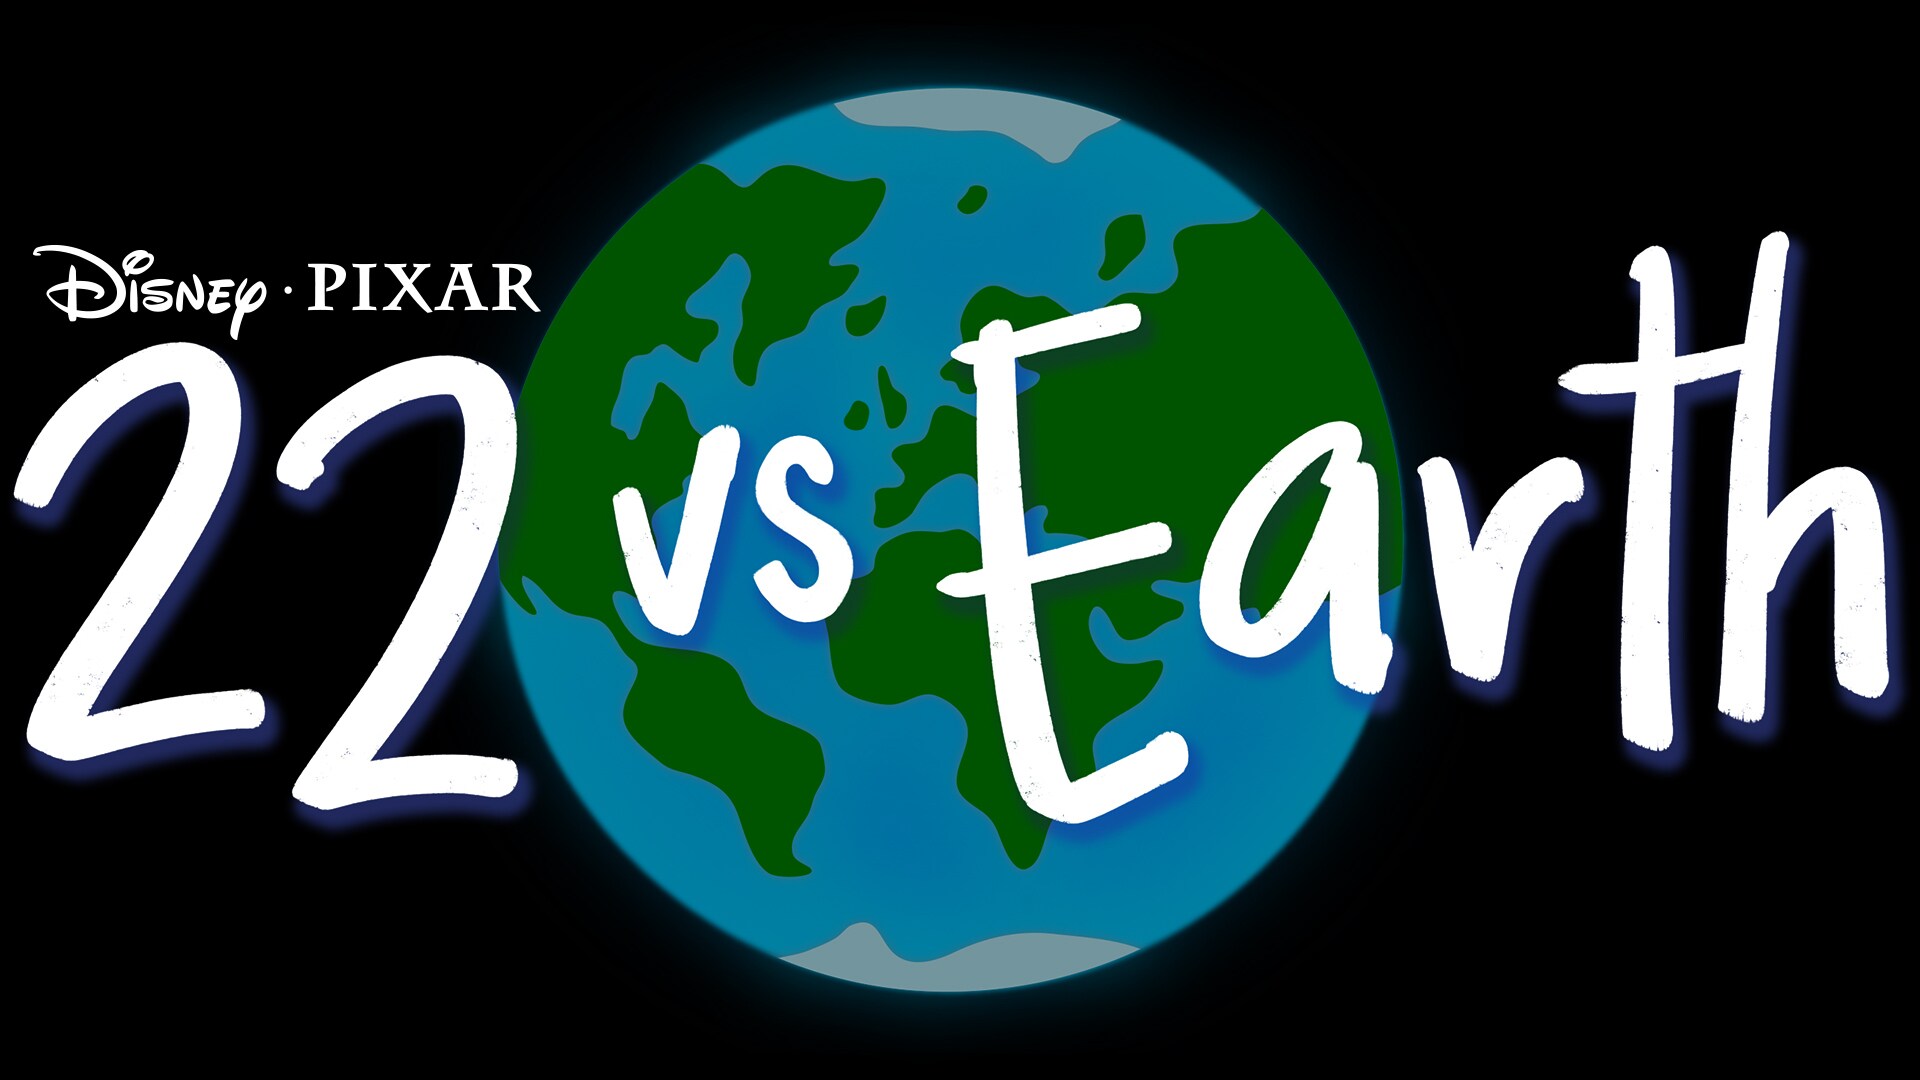 22 vs. Earth Logo